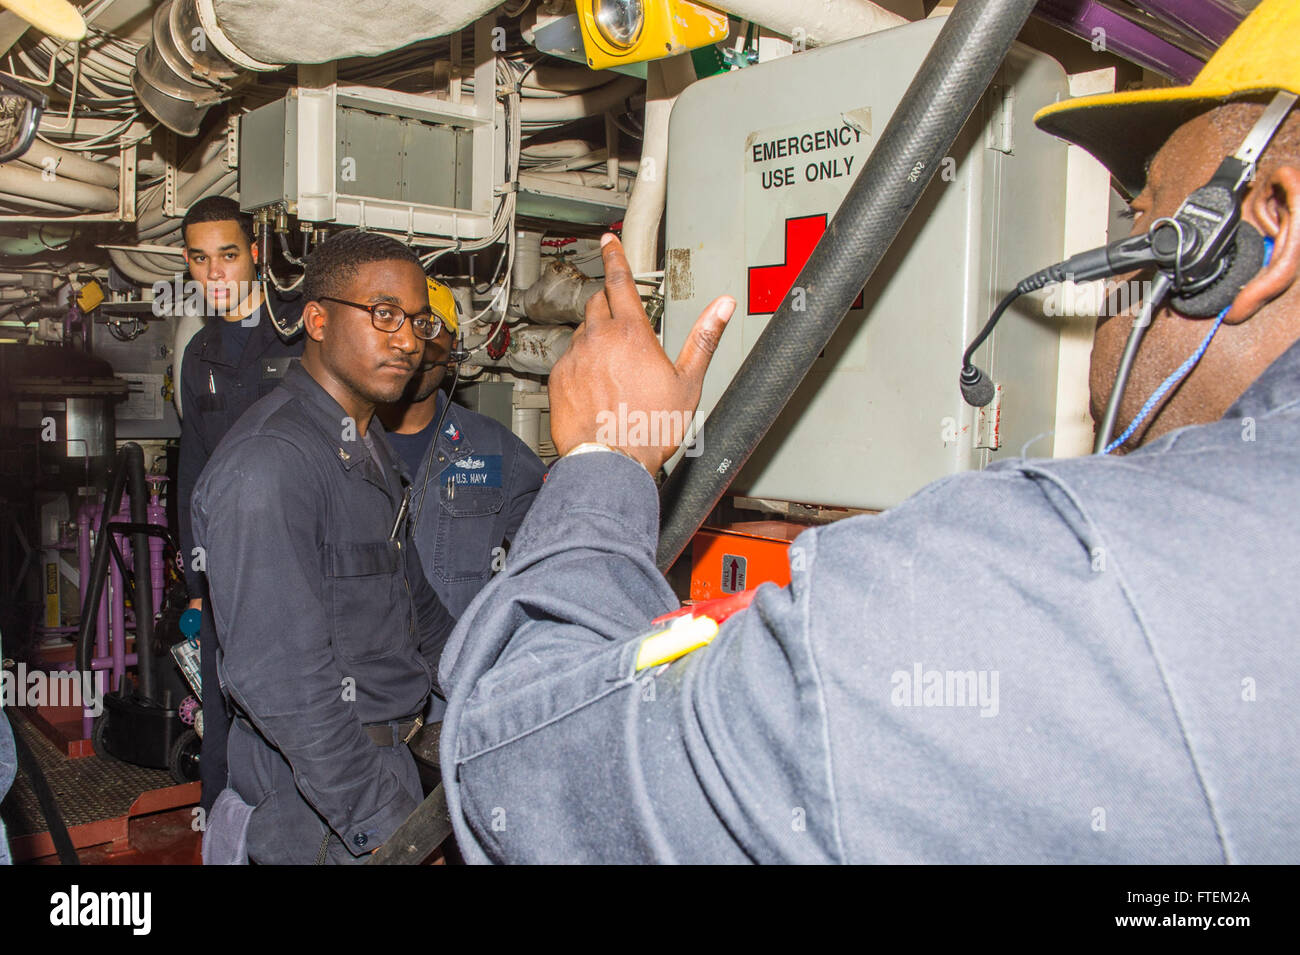 Océano Atlántico (Feb. 19, 2015) jefe técnico del sistema de turbina de gas Damian Bethel desde Miami, derecha, encarga a los marineros, incluyendo sistemas de Turbina de Gas técnico de 3ª clase Nowden Jaylun, centro, en procedimientos de extinción de incendios adecuado para una clase B incendio el 19 de febrero de 2015. Laboon, una clase Arleigh Burke destructor de misiles guiados home portado en Norfolk, está en marcha la realización de las operaciones navales en los EE.UU. 6ª Flota de la zona de operaciones en apoyo de los intereses de seguridad nacional de EE.UU. en Europa. Foto de stock